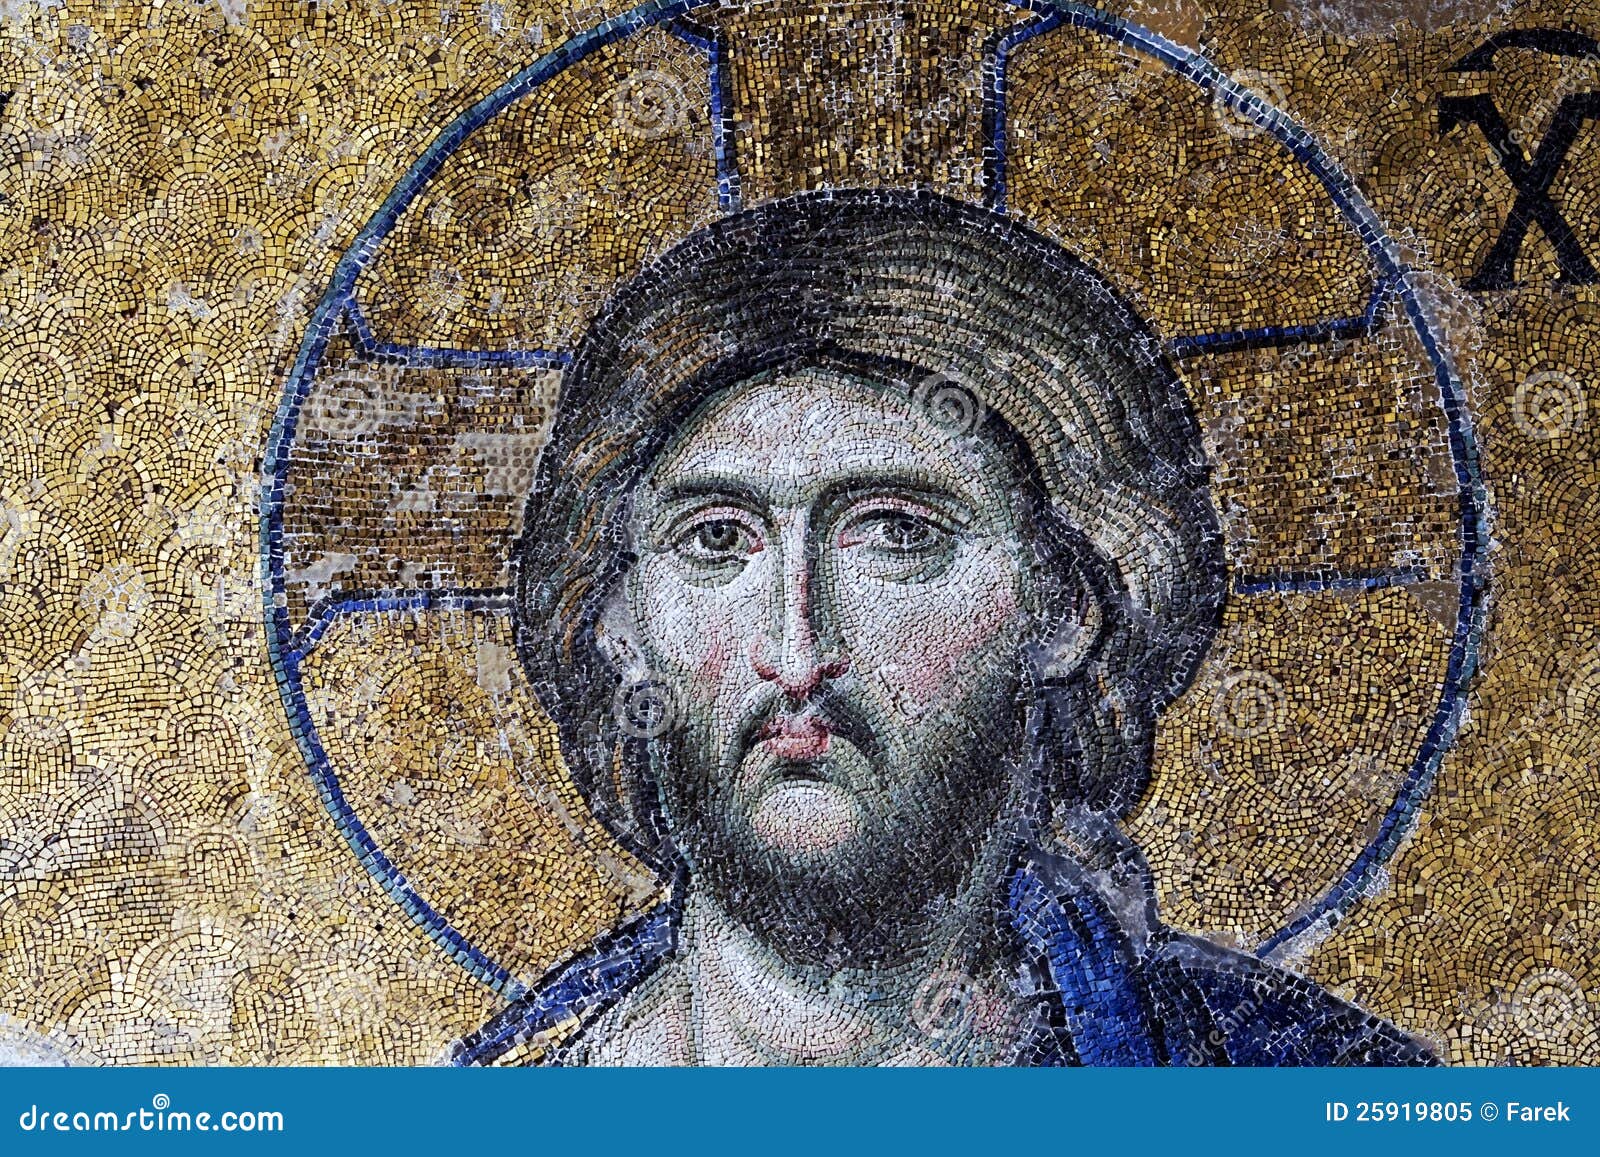 christ pantocrator ruler mosaic in hagia sophia